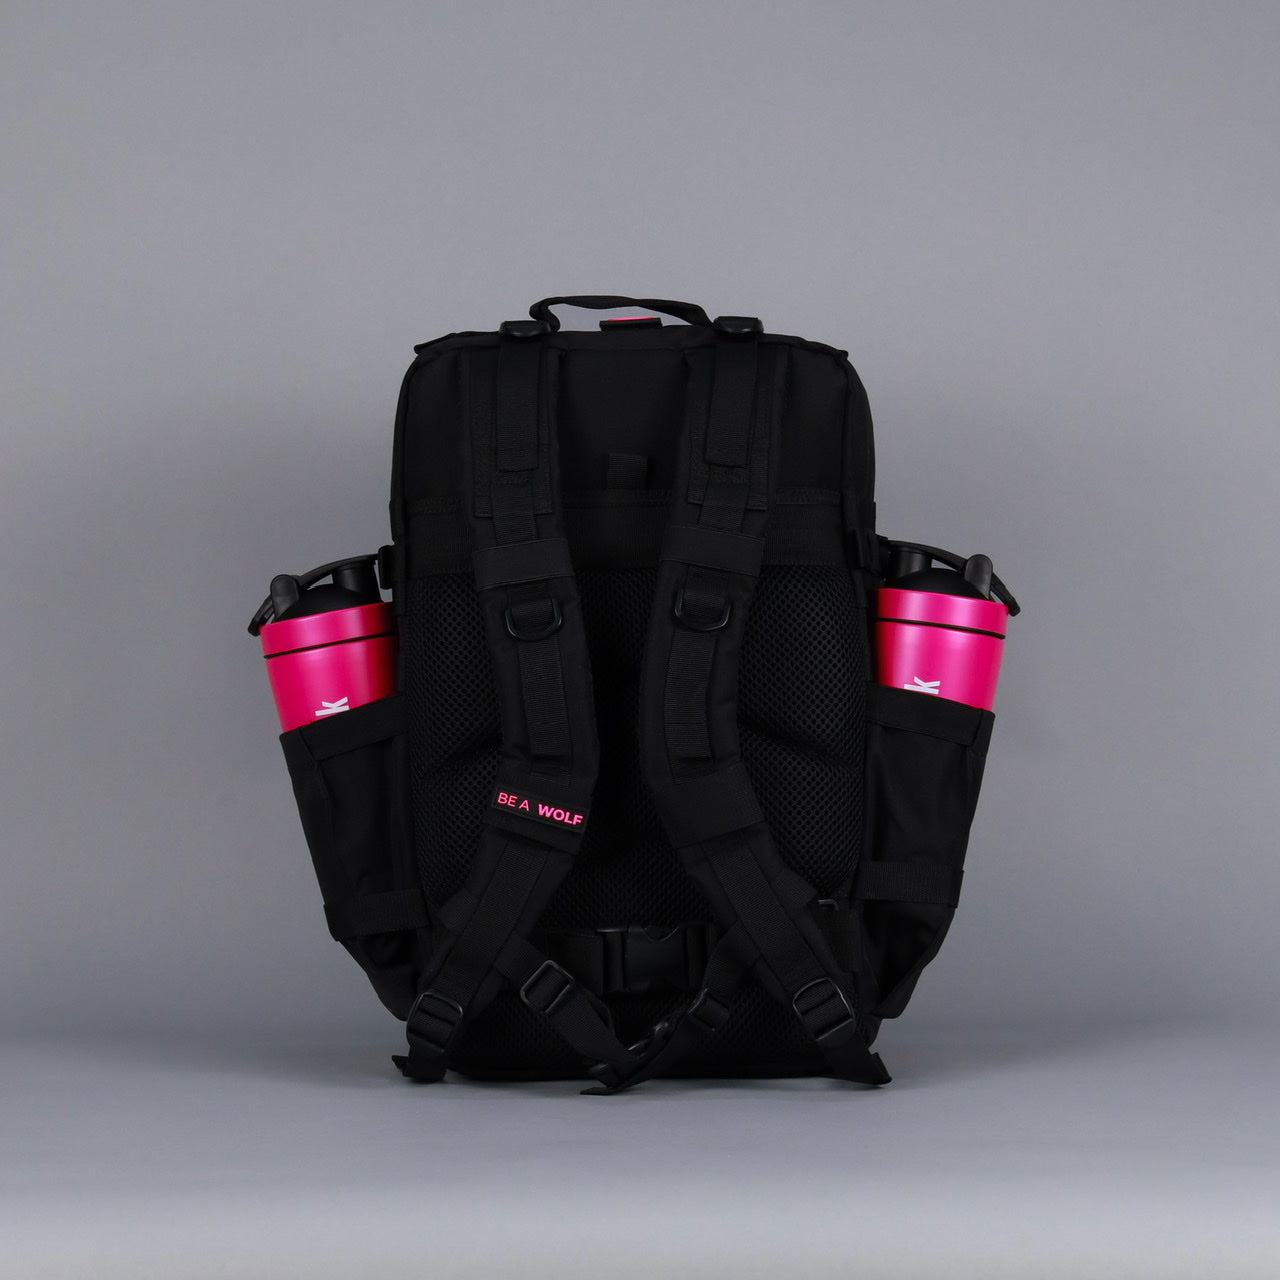 45L Backpack Black Neon Pink